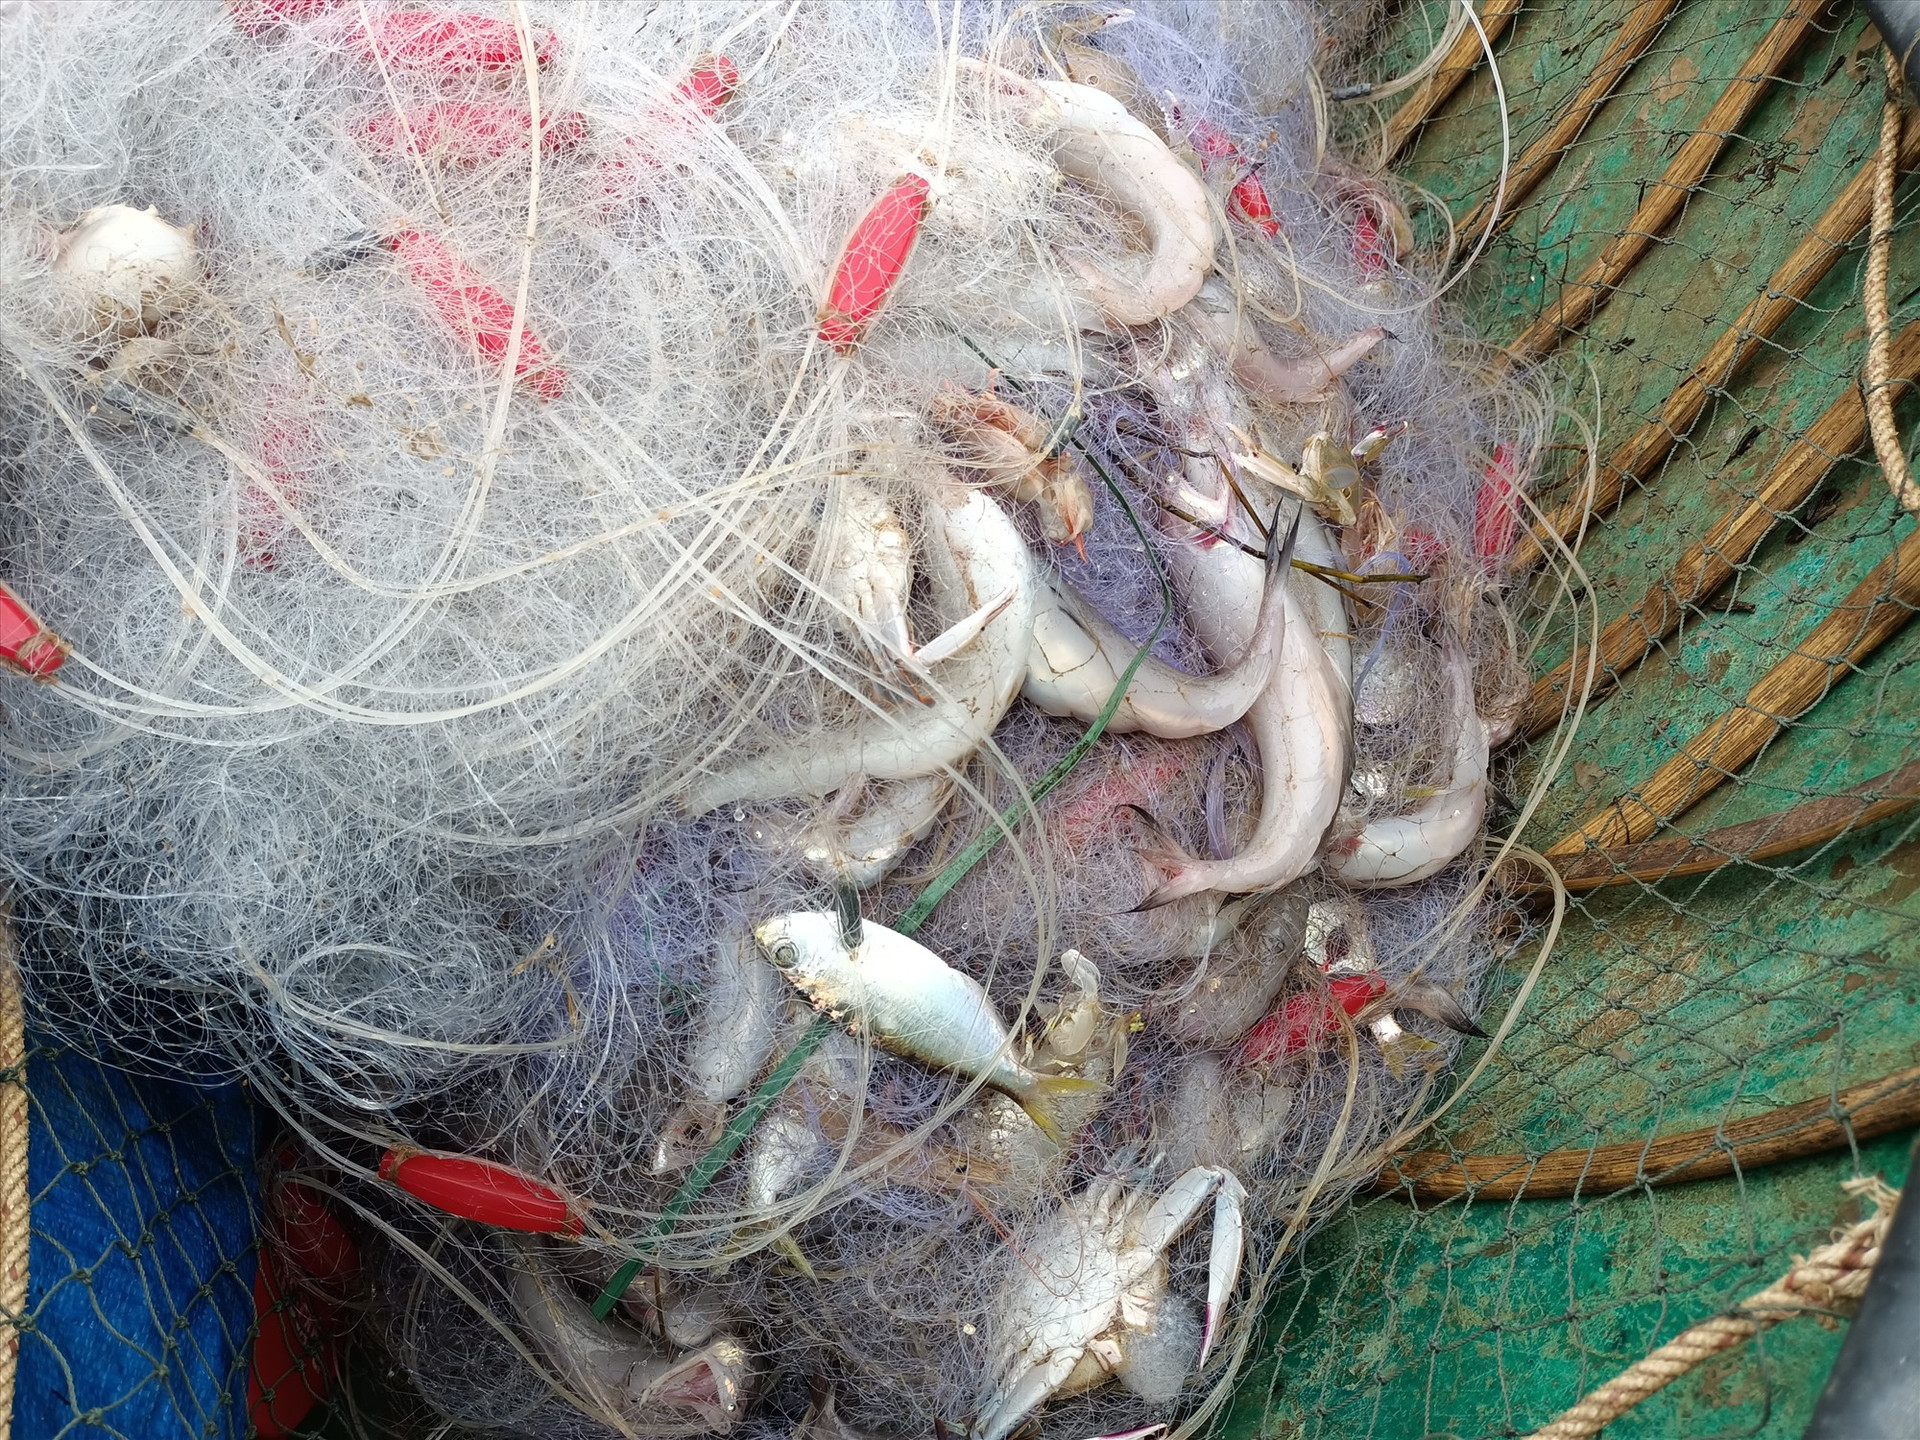 Cá khoai mắc dày đặc lưới của ngư dân.